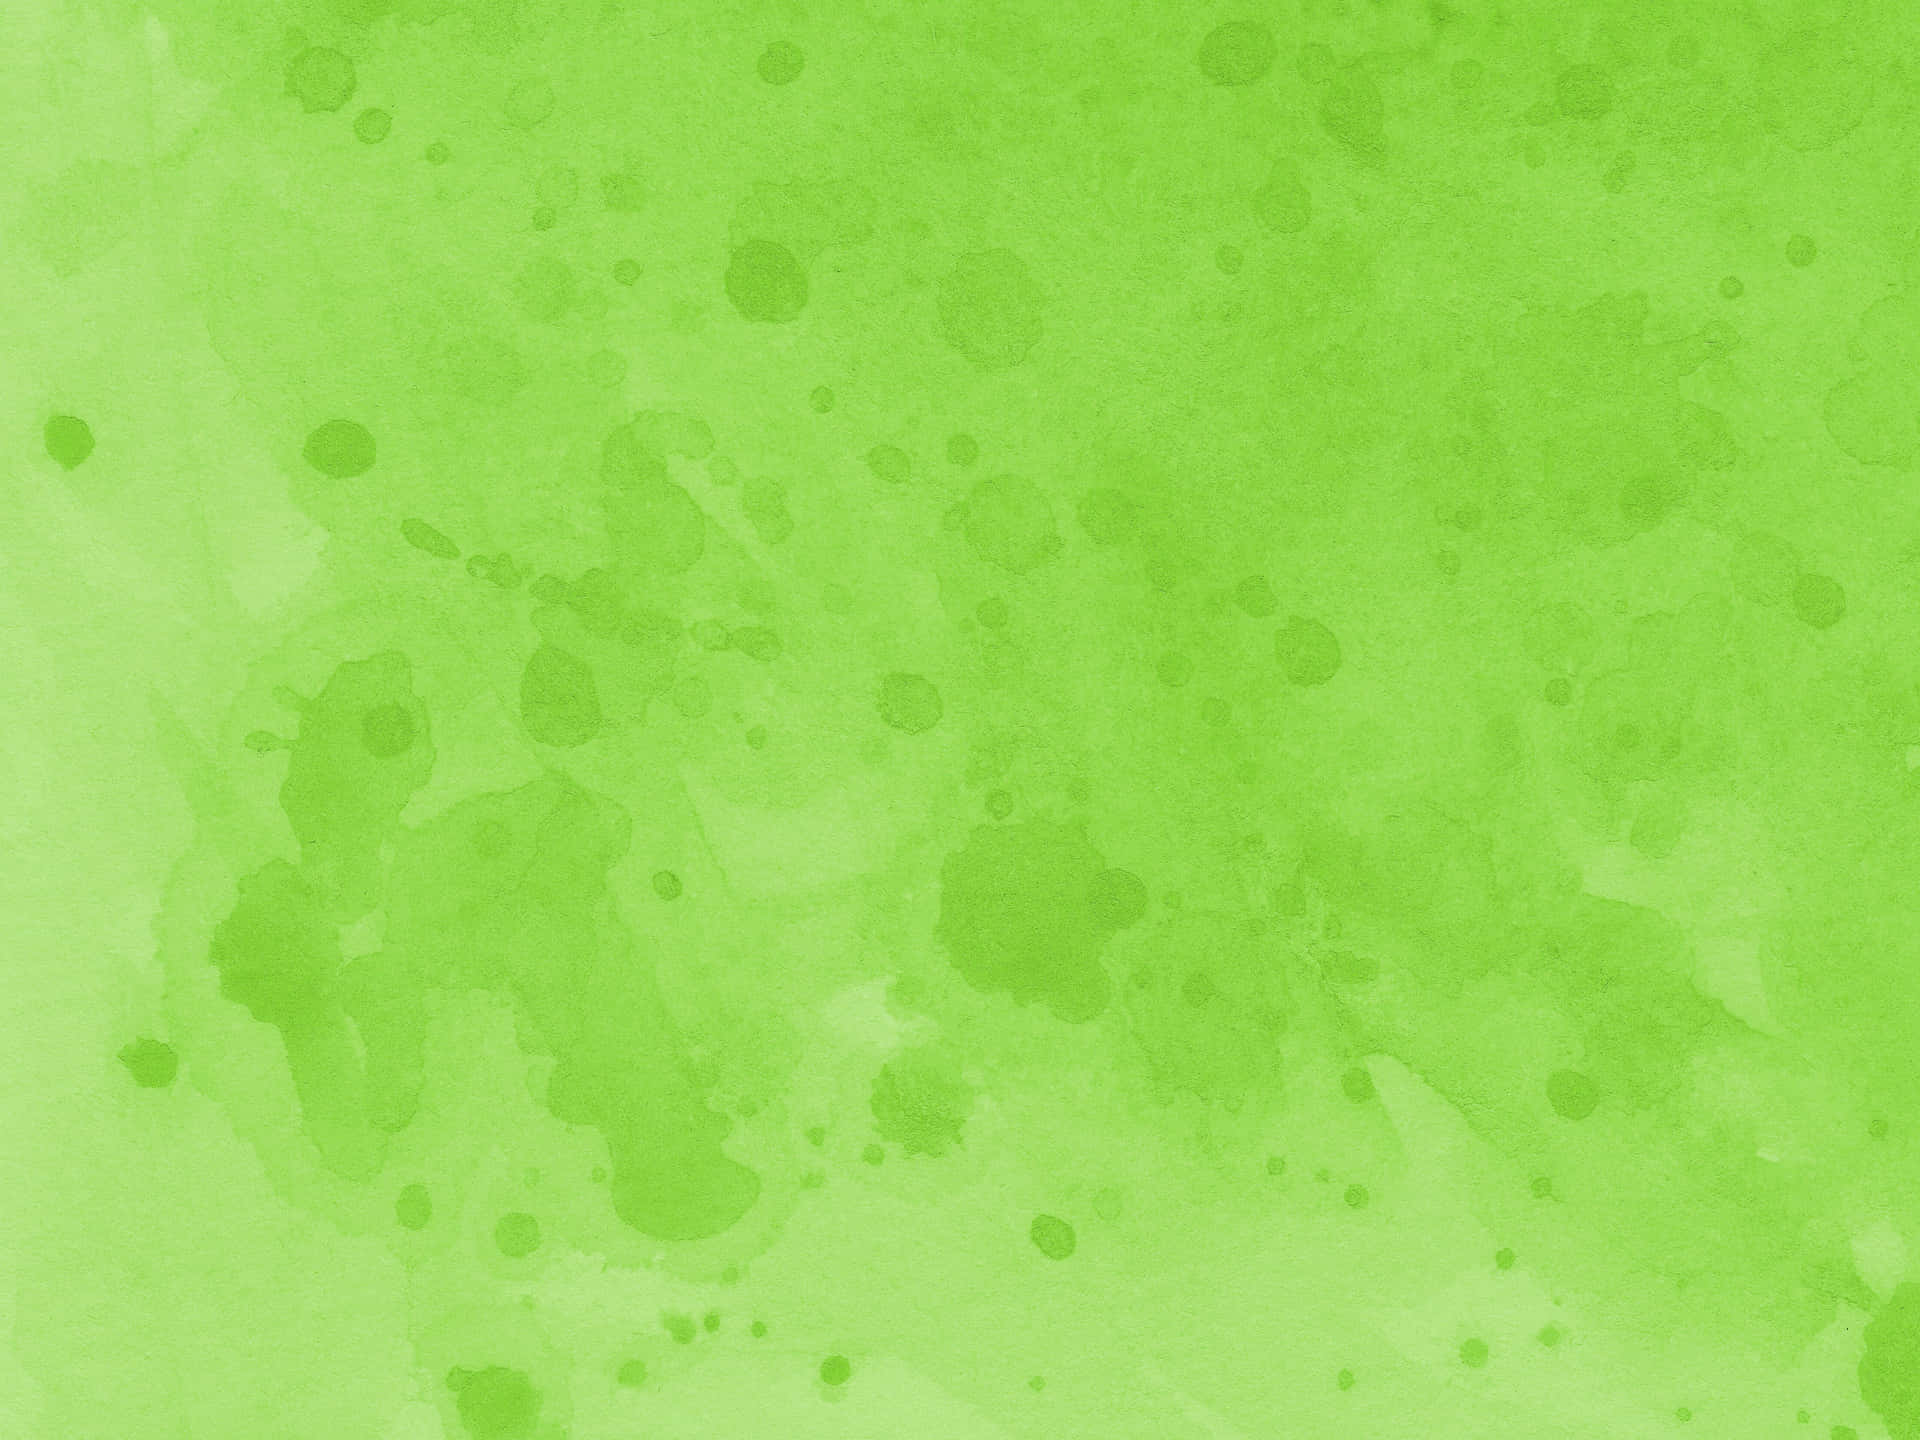 Splatters Across Light Green Background